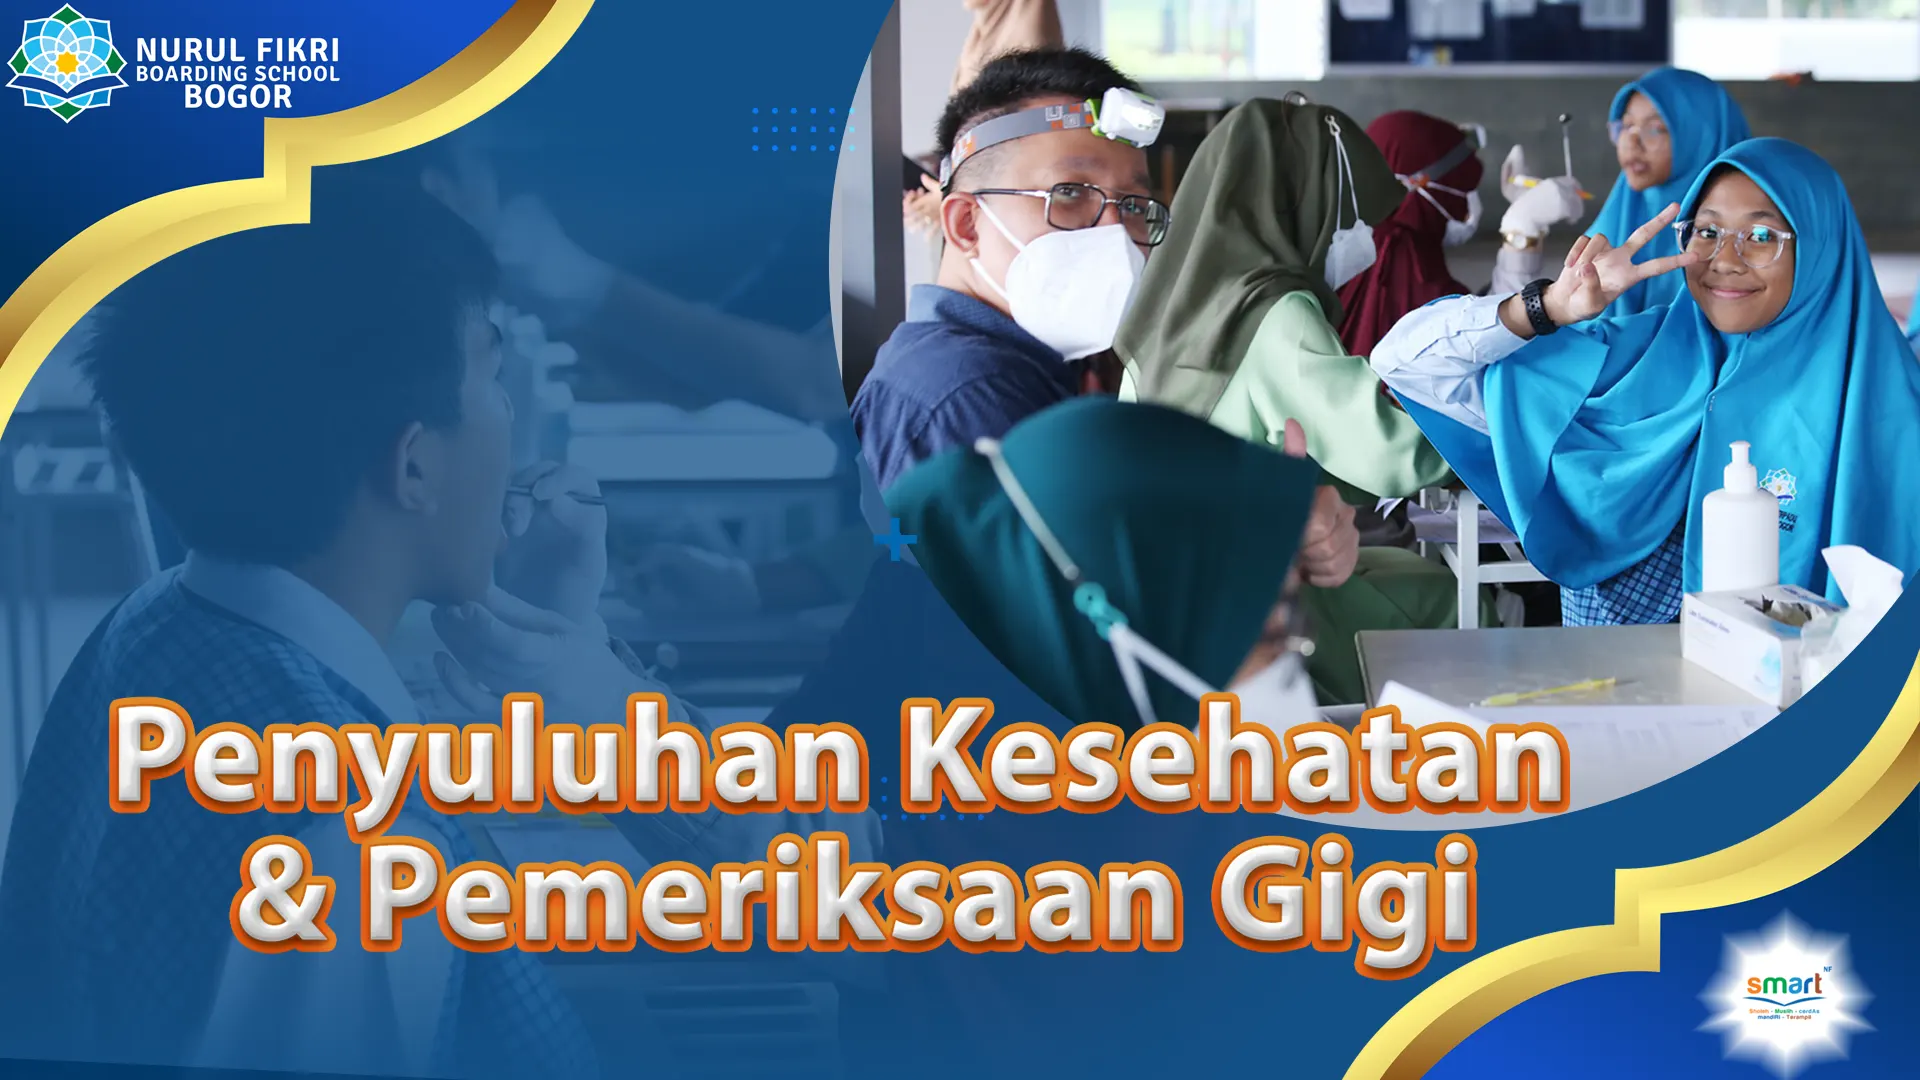 NFBS Bogor Berkomitmen dalam Menjaga Kesehatan Para Siswa dengan Gelar Penyuluhan dan Pemeriksaan Kesehatan Gigi